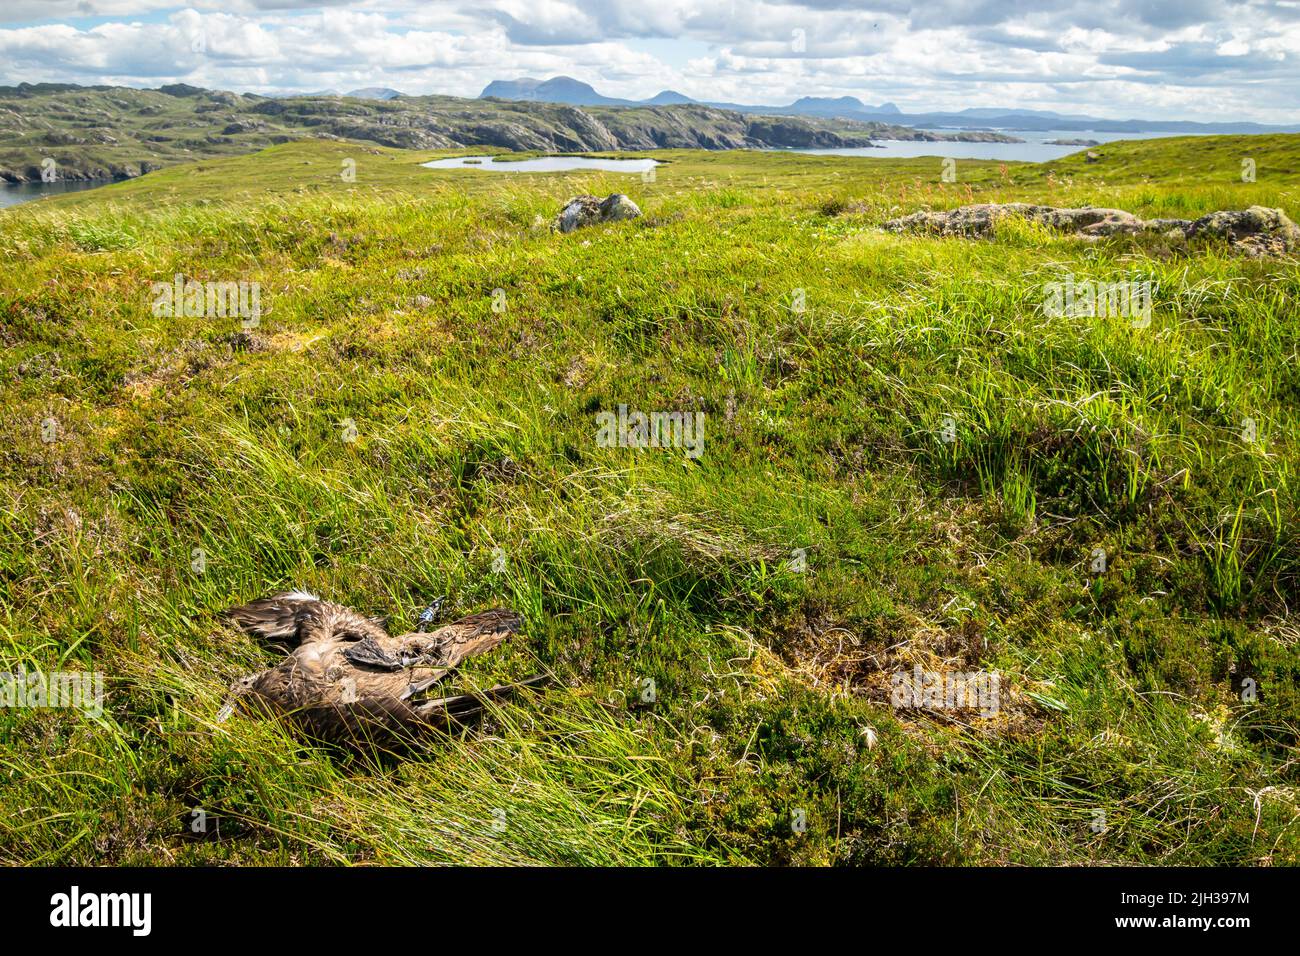 Eine tote große skua liegt im Gras auf einer Insel mit Hügeln im Hintergrund Stockfoto